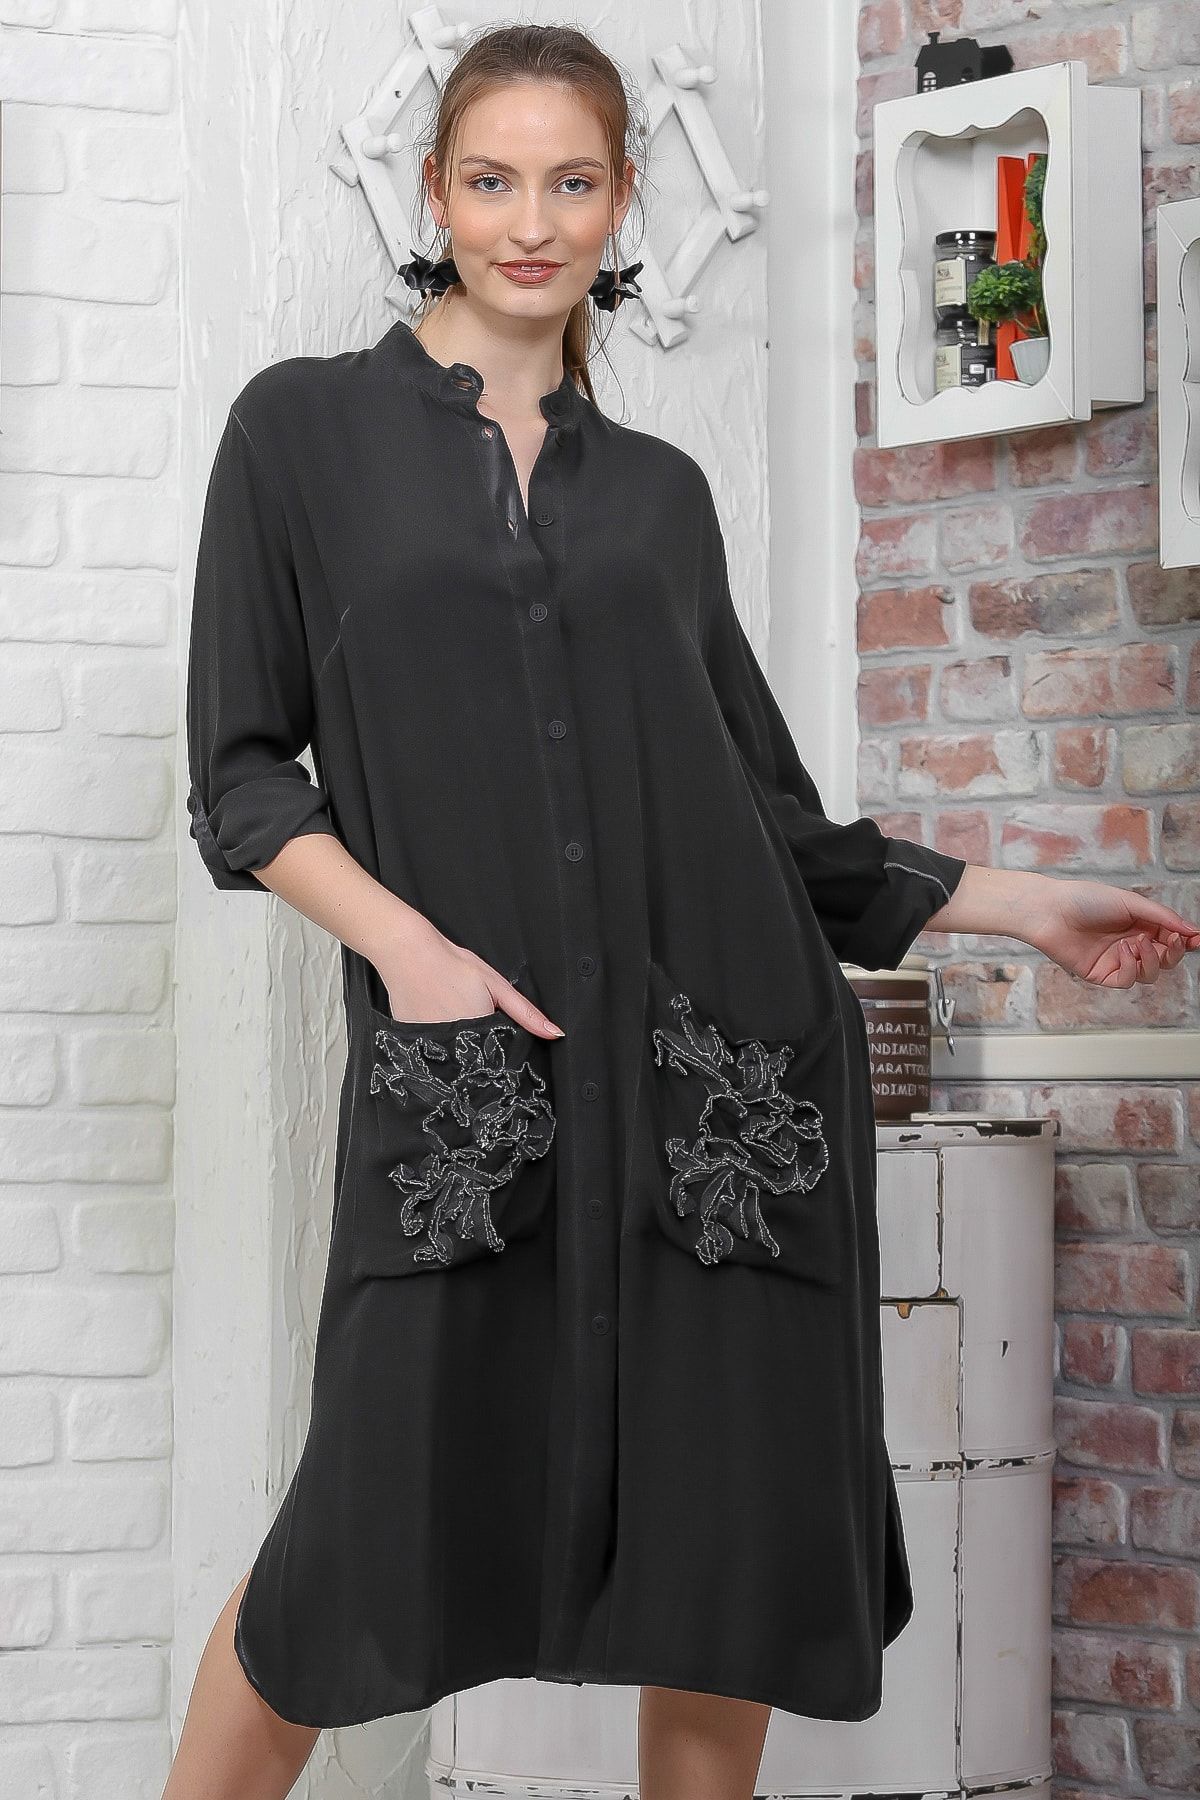 Chiccy Kadın Siyah Düğmeli Cepli Yıkamalı Midi Elbise M10160000EL95104